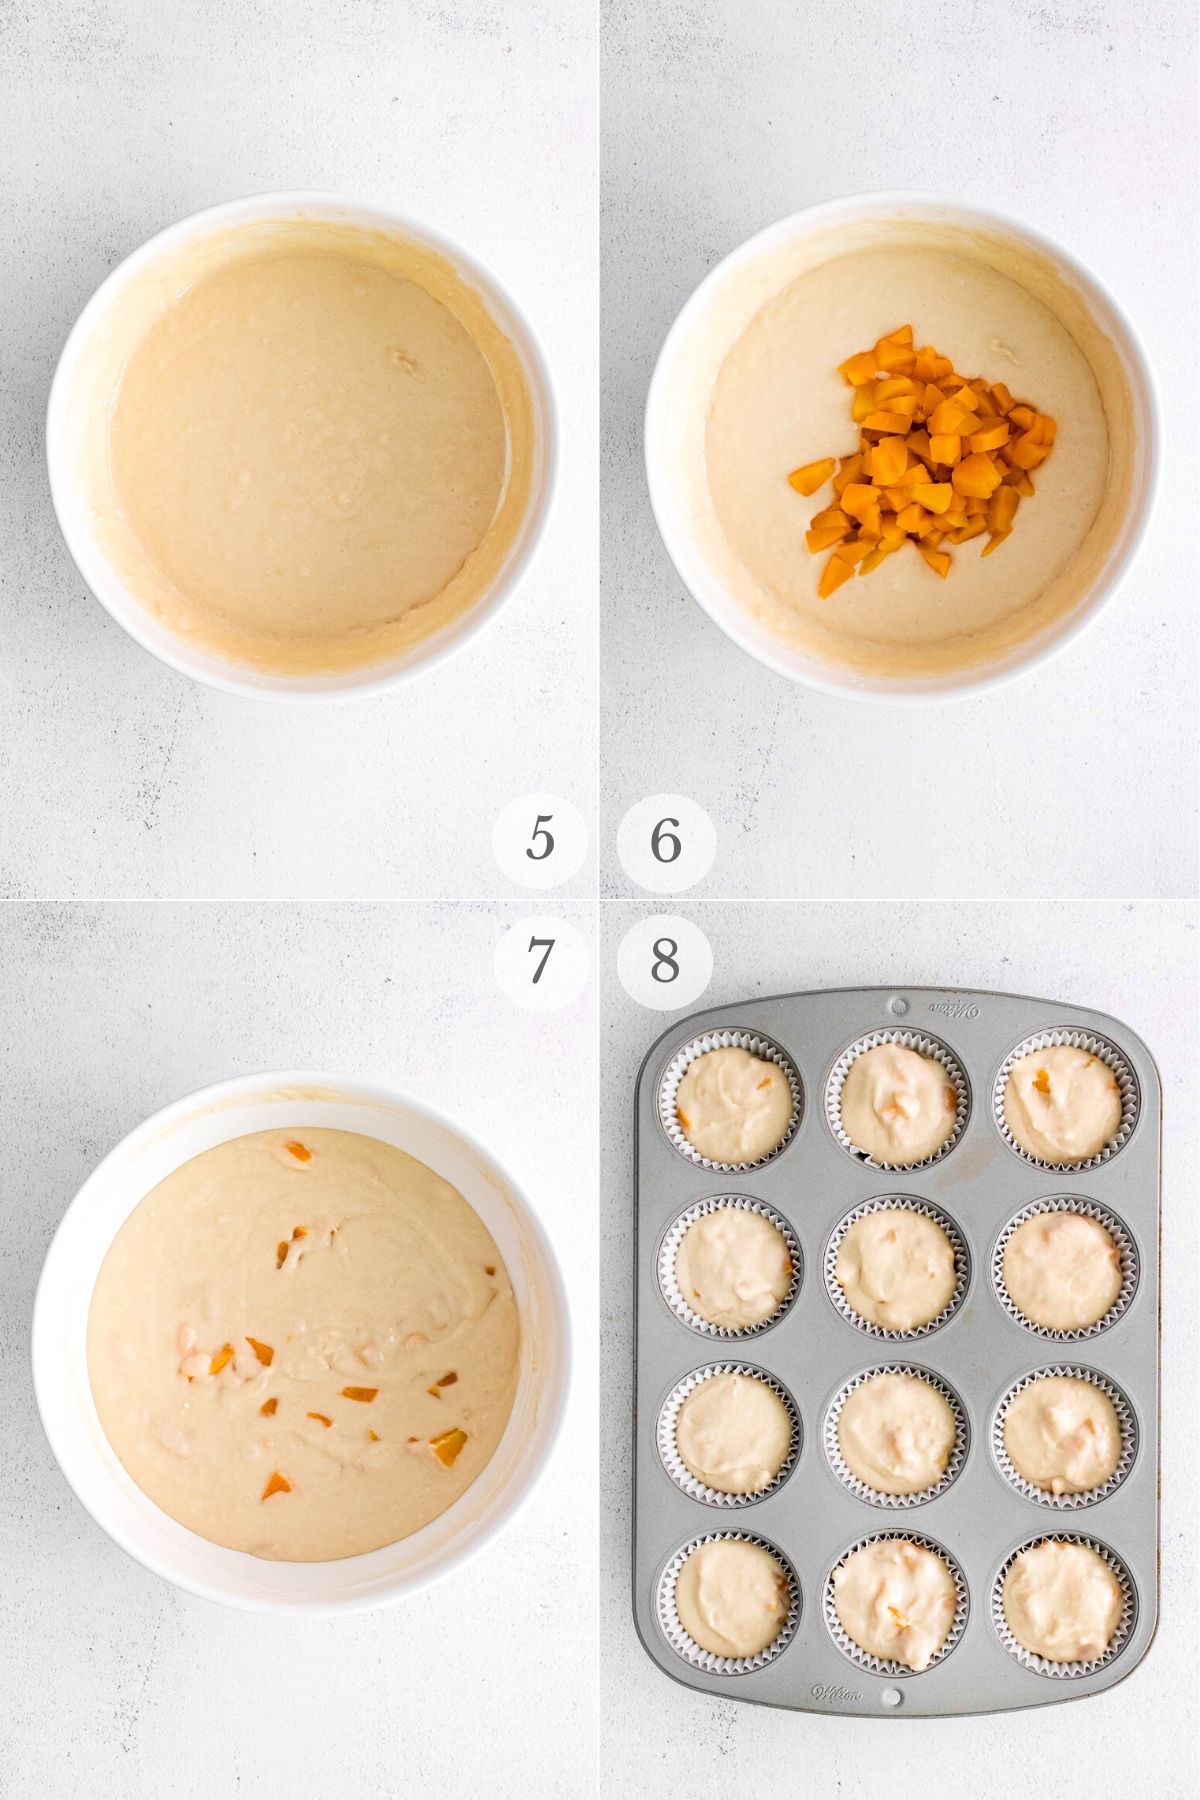 peach muffins recipe steps 5-8.